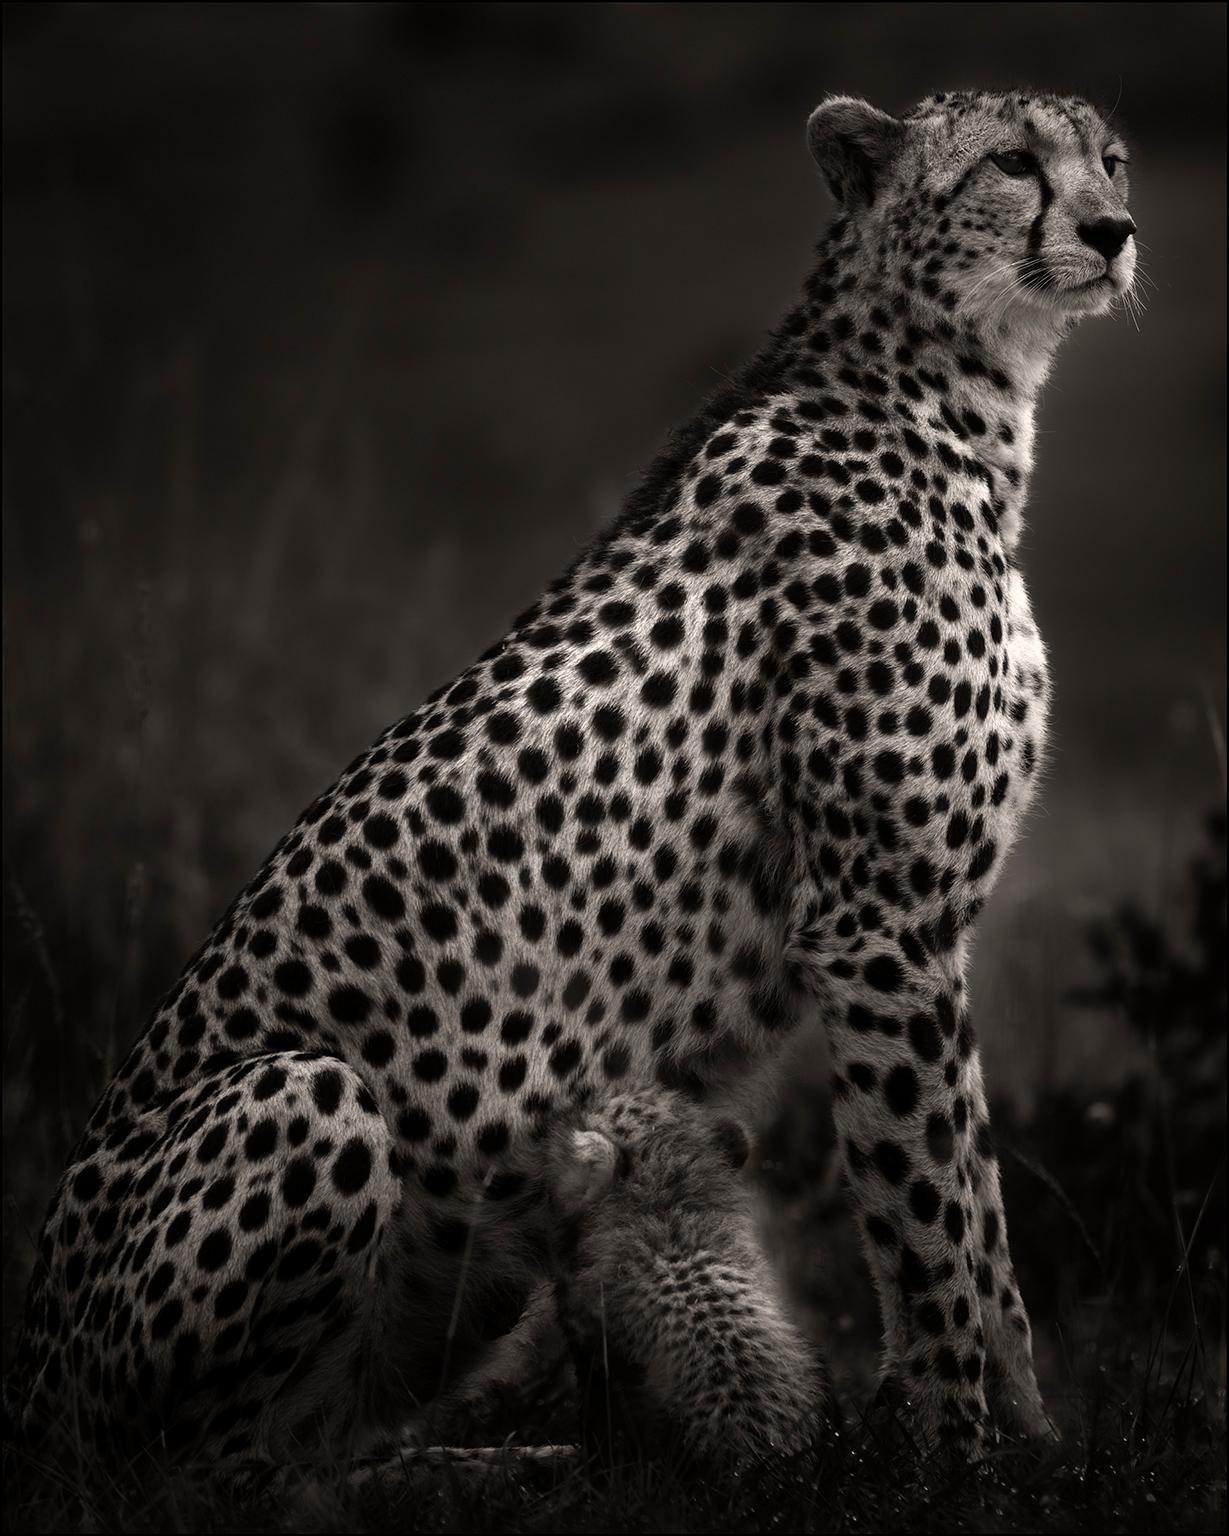 Joachim Schmeisser Portrait Photograph – Imani I, Tier, Schwarz-Weiß-Fotografie, Gedicht, Afrika, Tierwelt